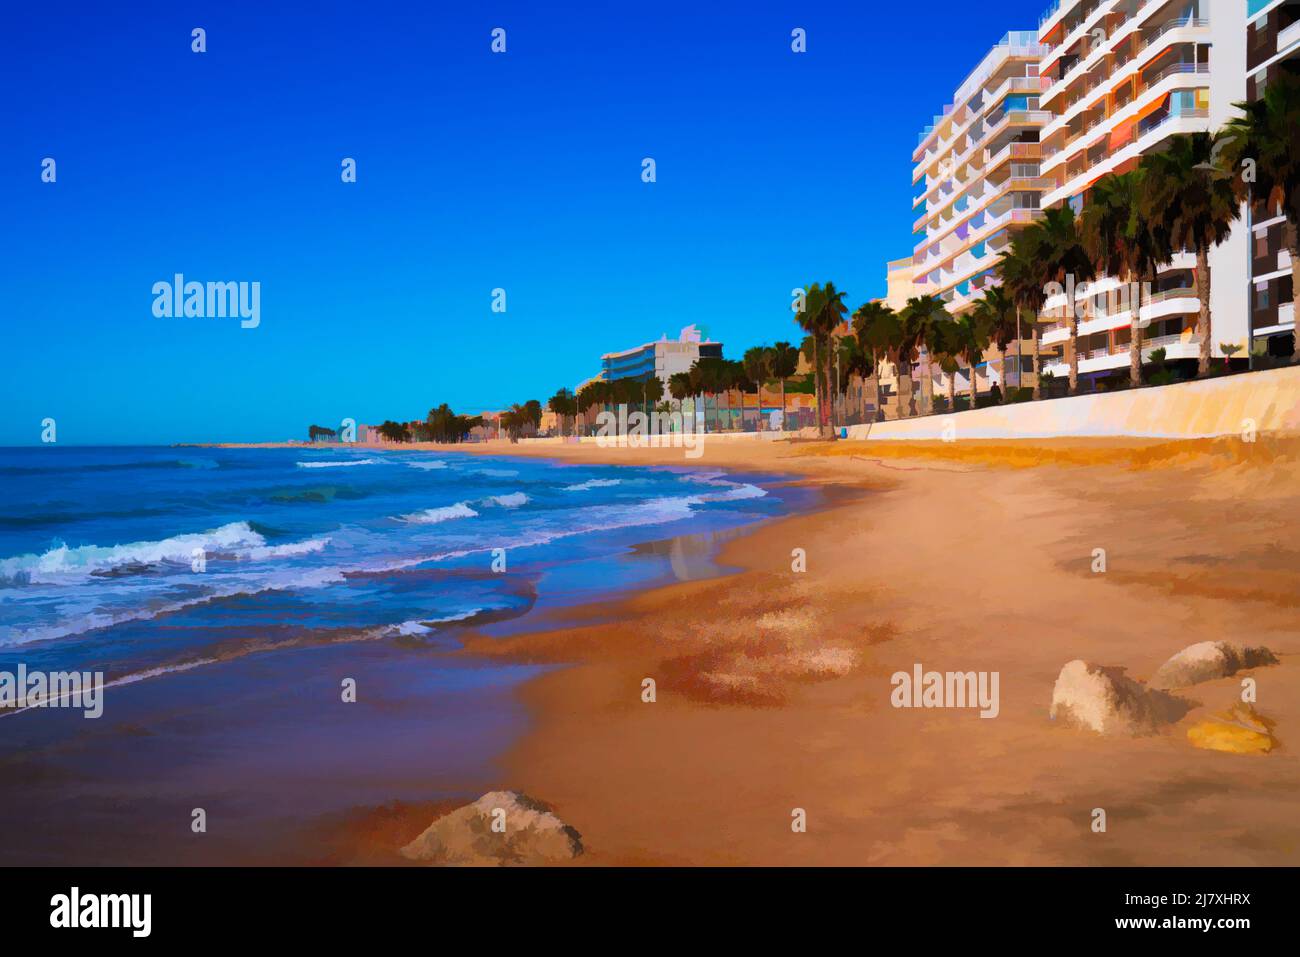 Playa de Villajoyosa España arena mar y palmeras ilustración Costa Blanca Alicante Foto de stock